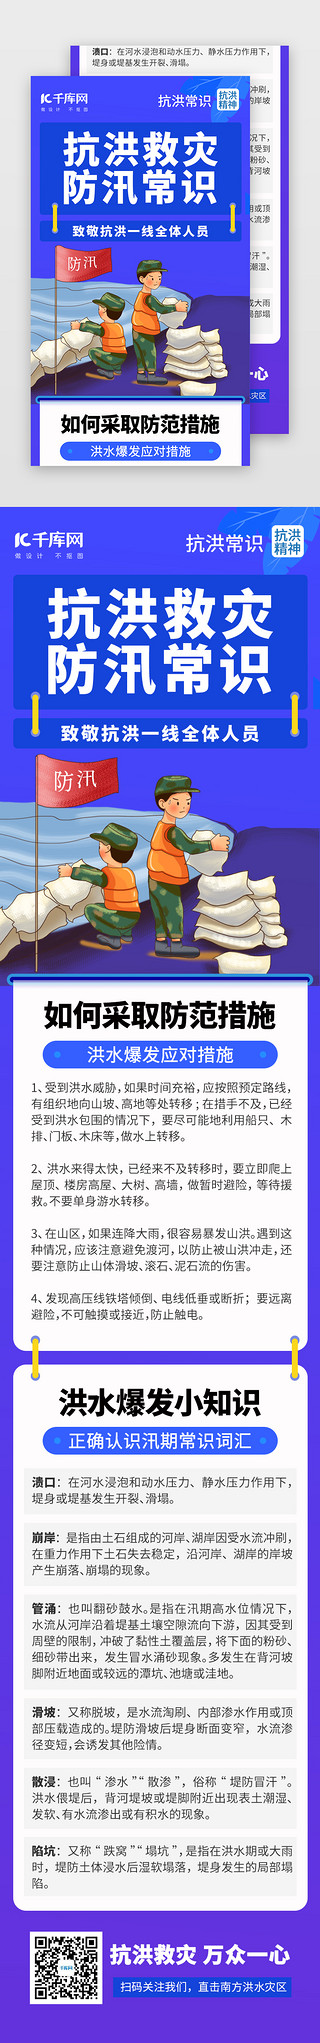 郑州加油河南加油UI设计素材_抗洪救灾防汛常识抢险H5